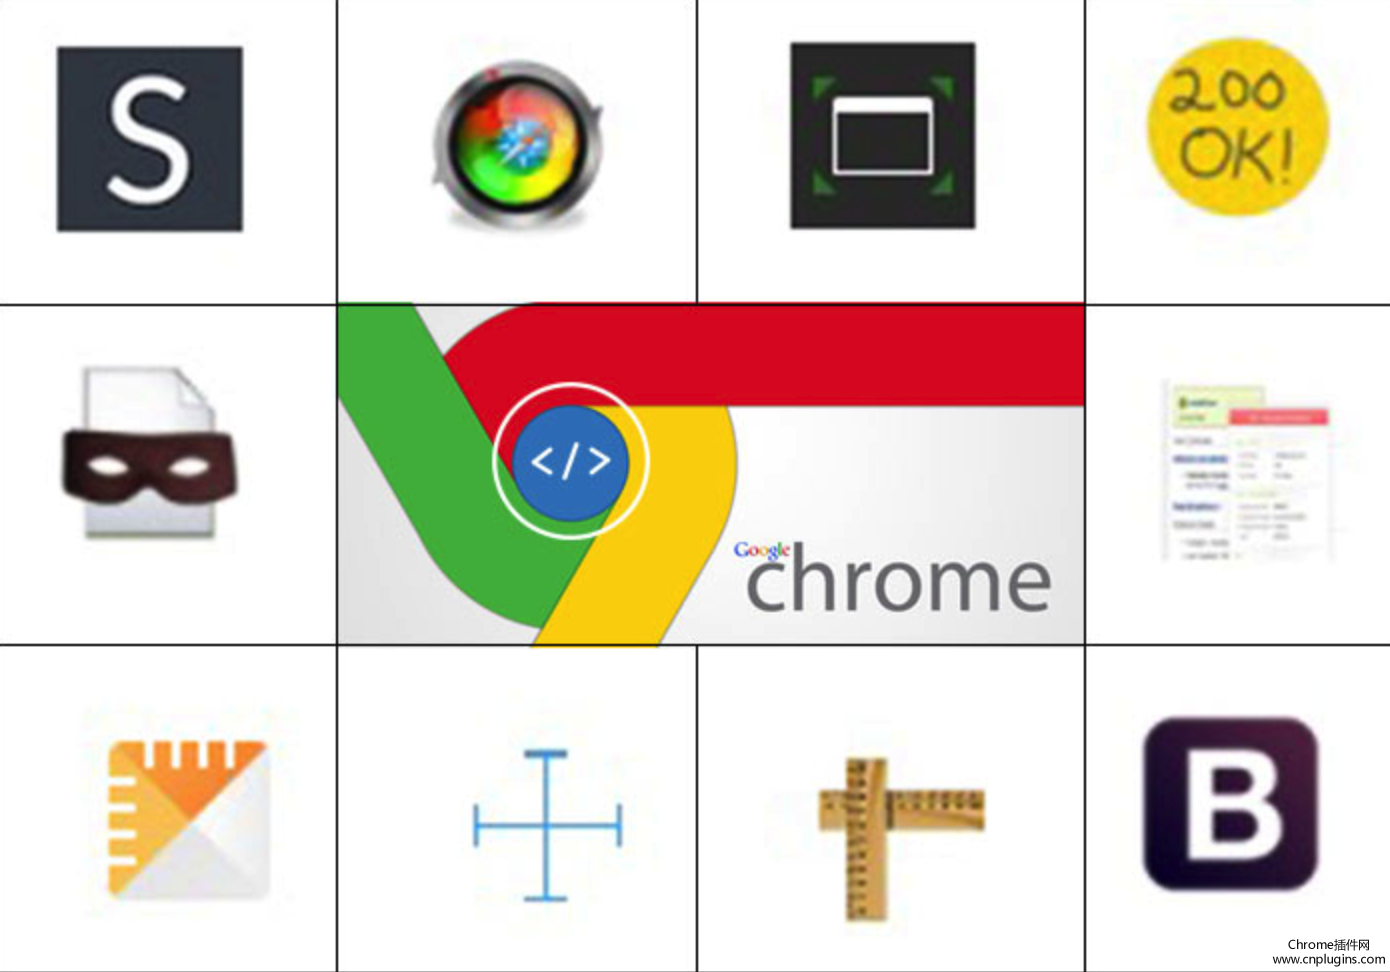 前端网页设计师必备的十大Chrome扩展程序汇总整理推荐